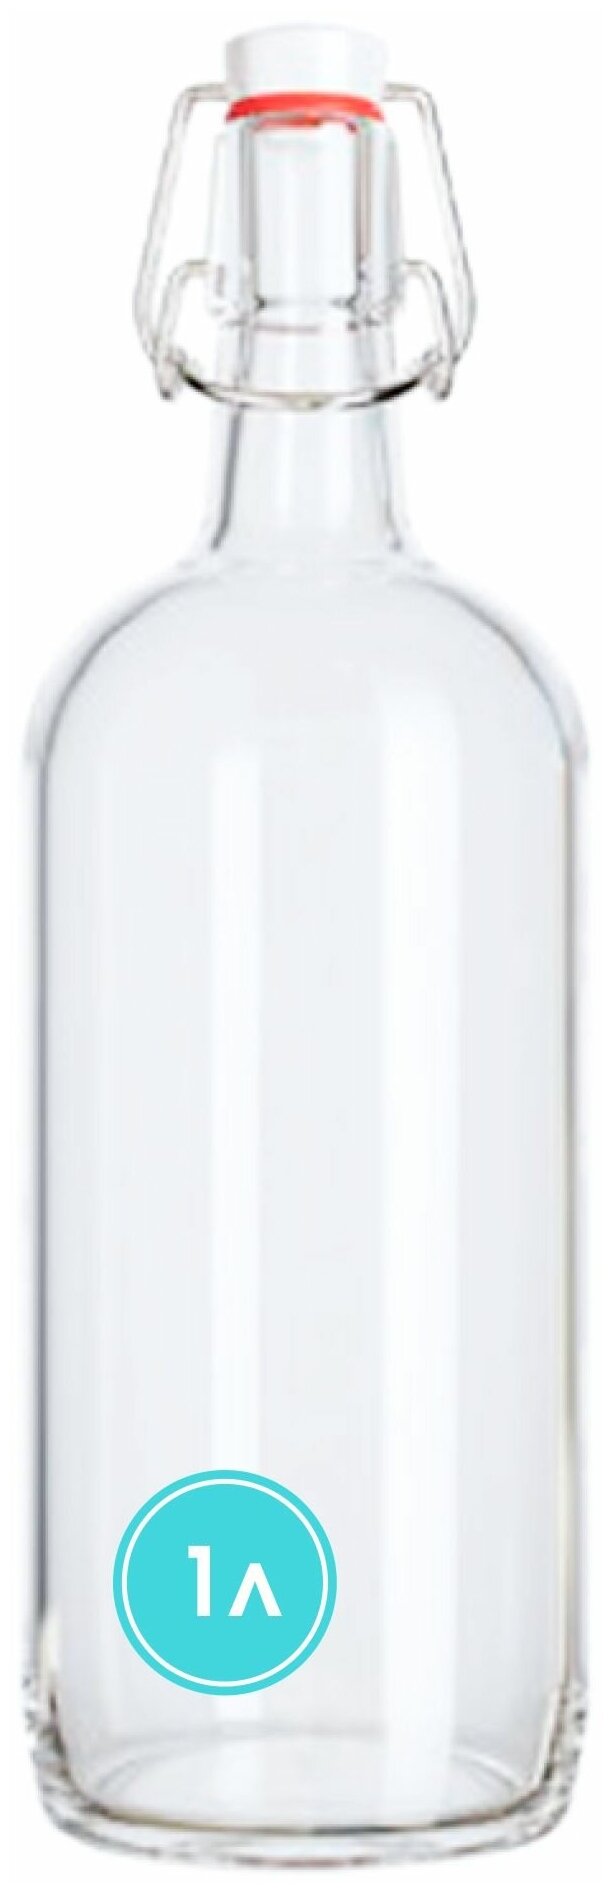 Бутылка бугельная с пробкой 1 литр светлое стекло / Для масла / Для вина / Для настоек / Для сока / Пивная бутыль.